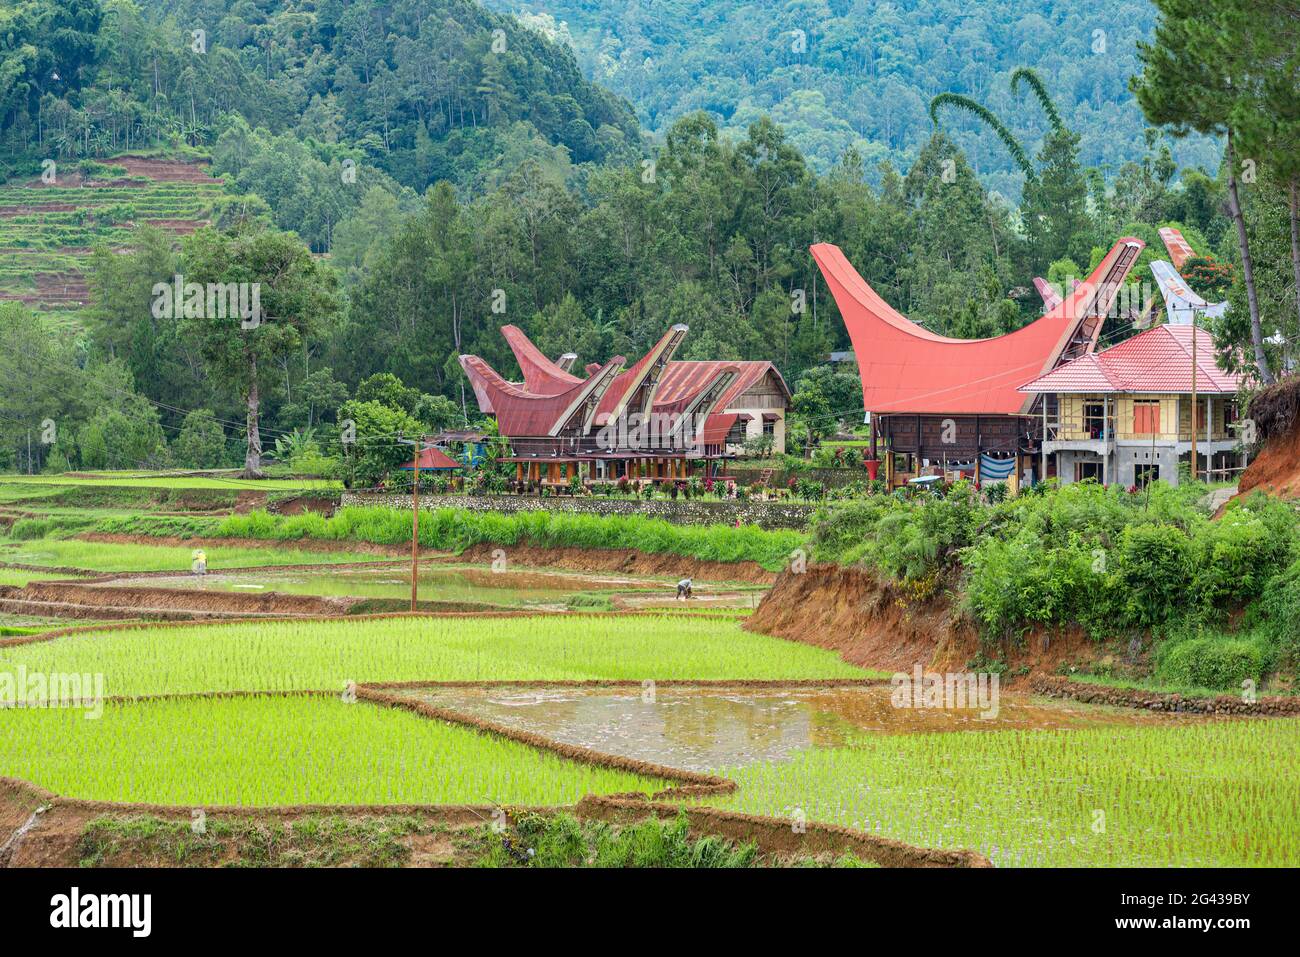 Hamlet with Tongkonan house and rice granary in the mountains of Tana Toraja Stock Photo